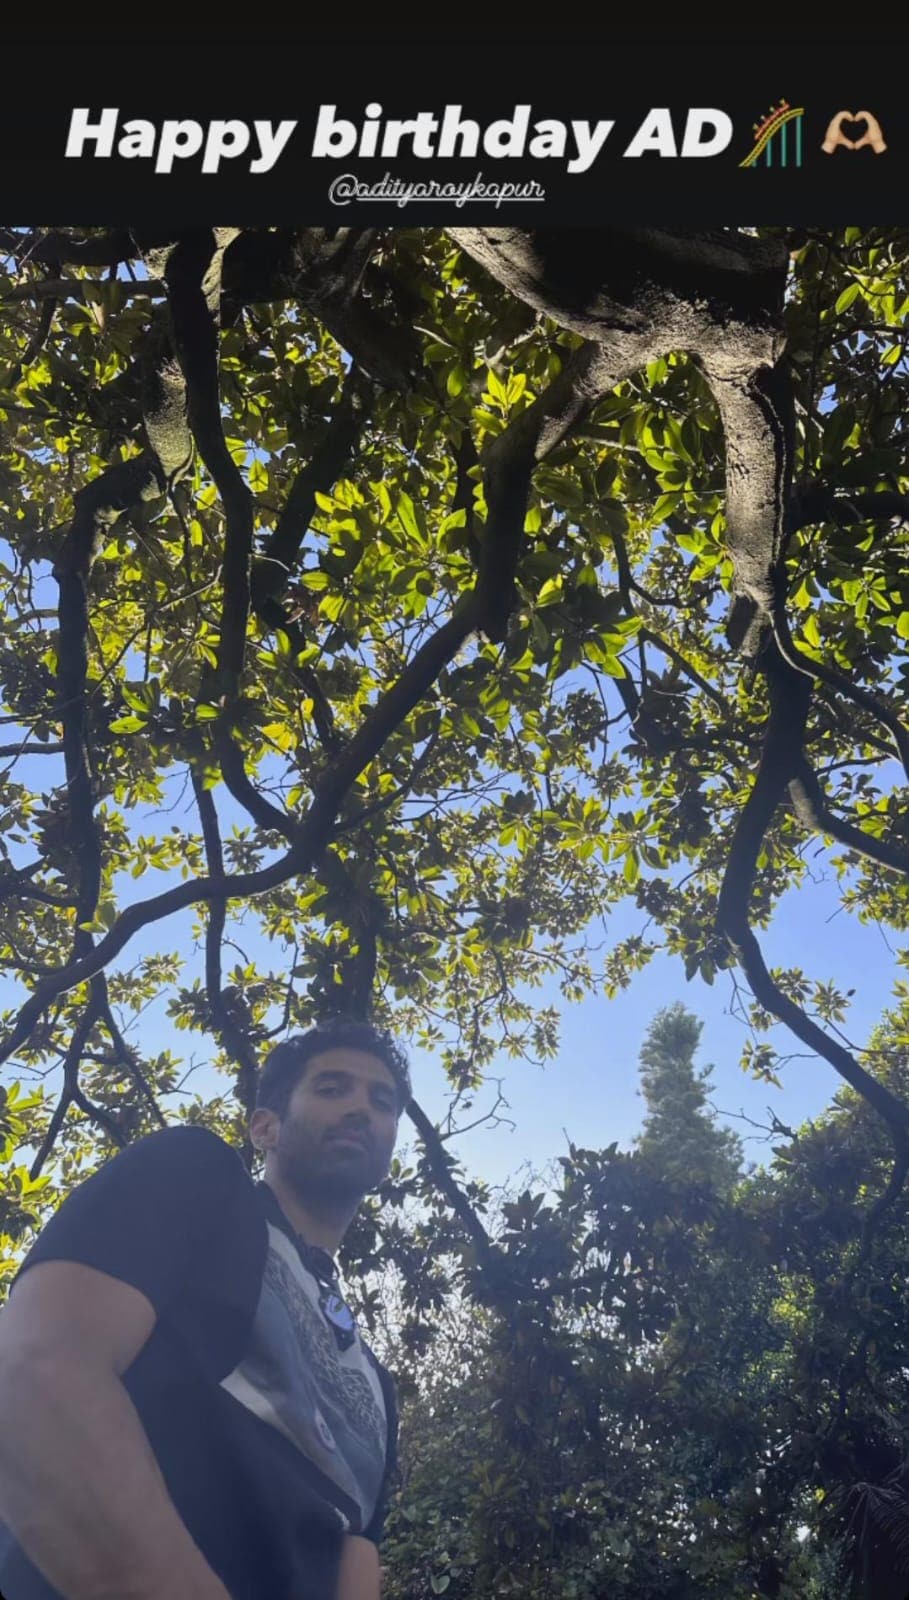 Aditya stood amidst greenery on a bright sunny day.